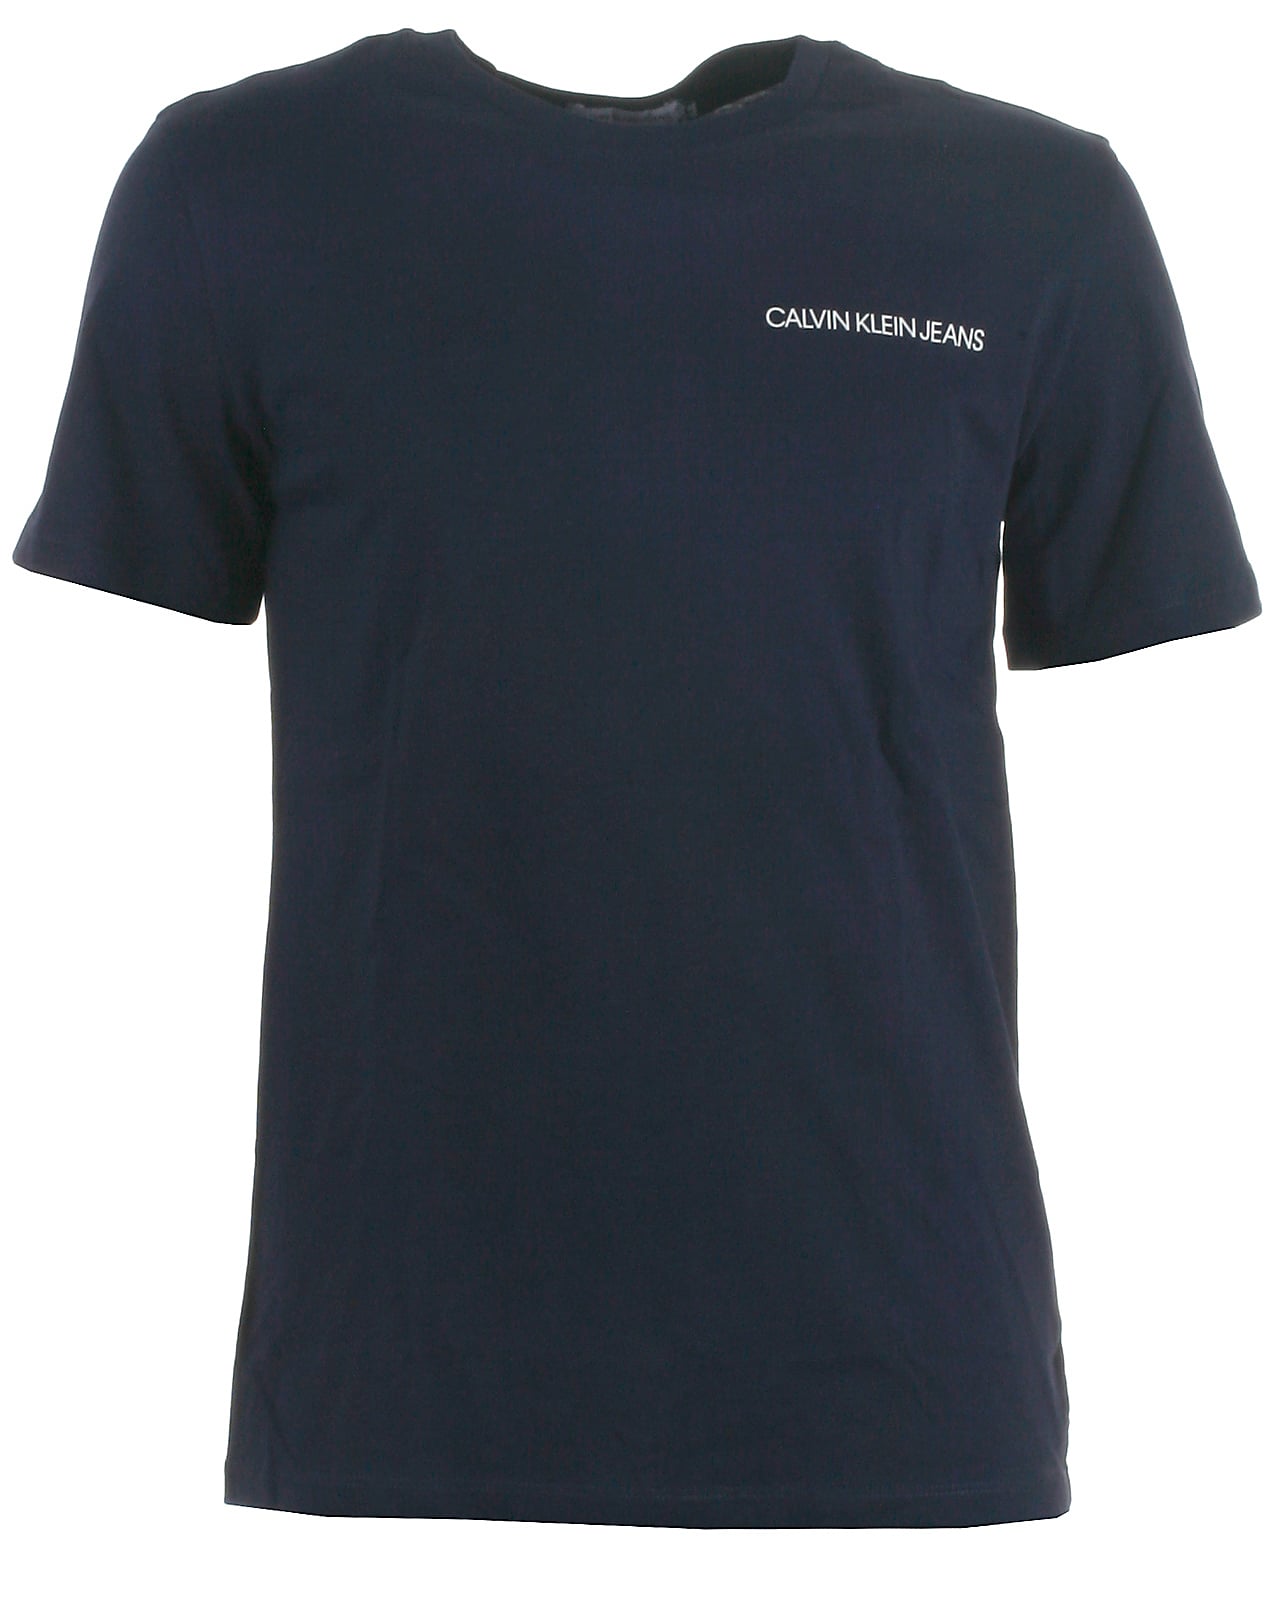 Calvin Klein t-shirt s/s, peacoat - 152,12år